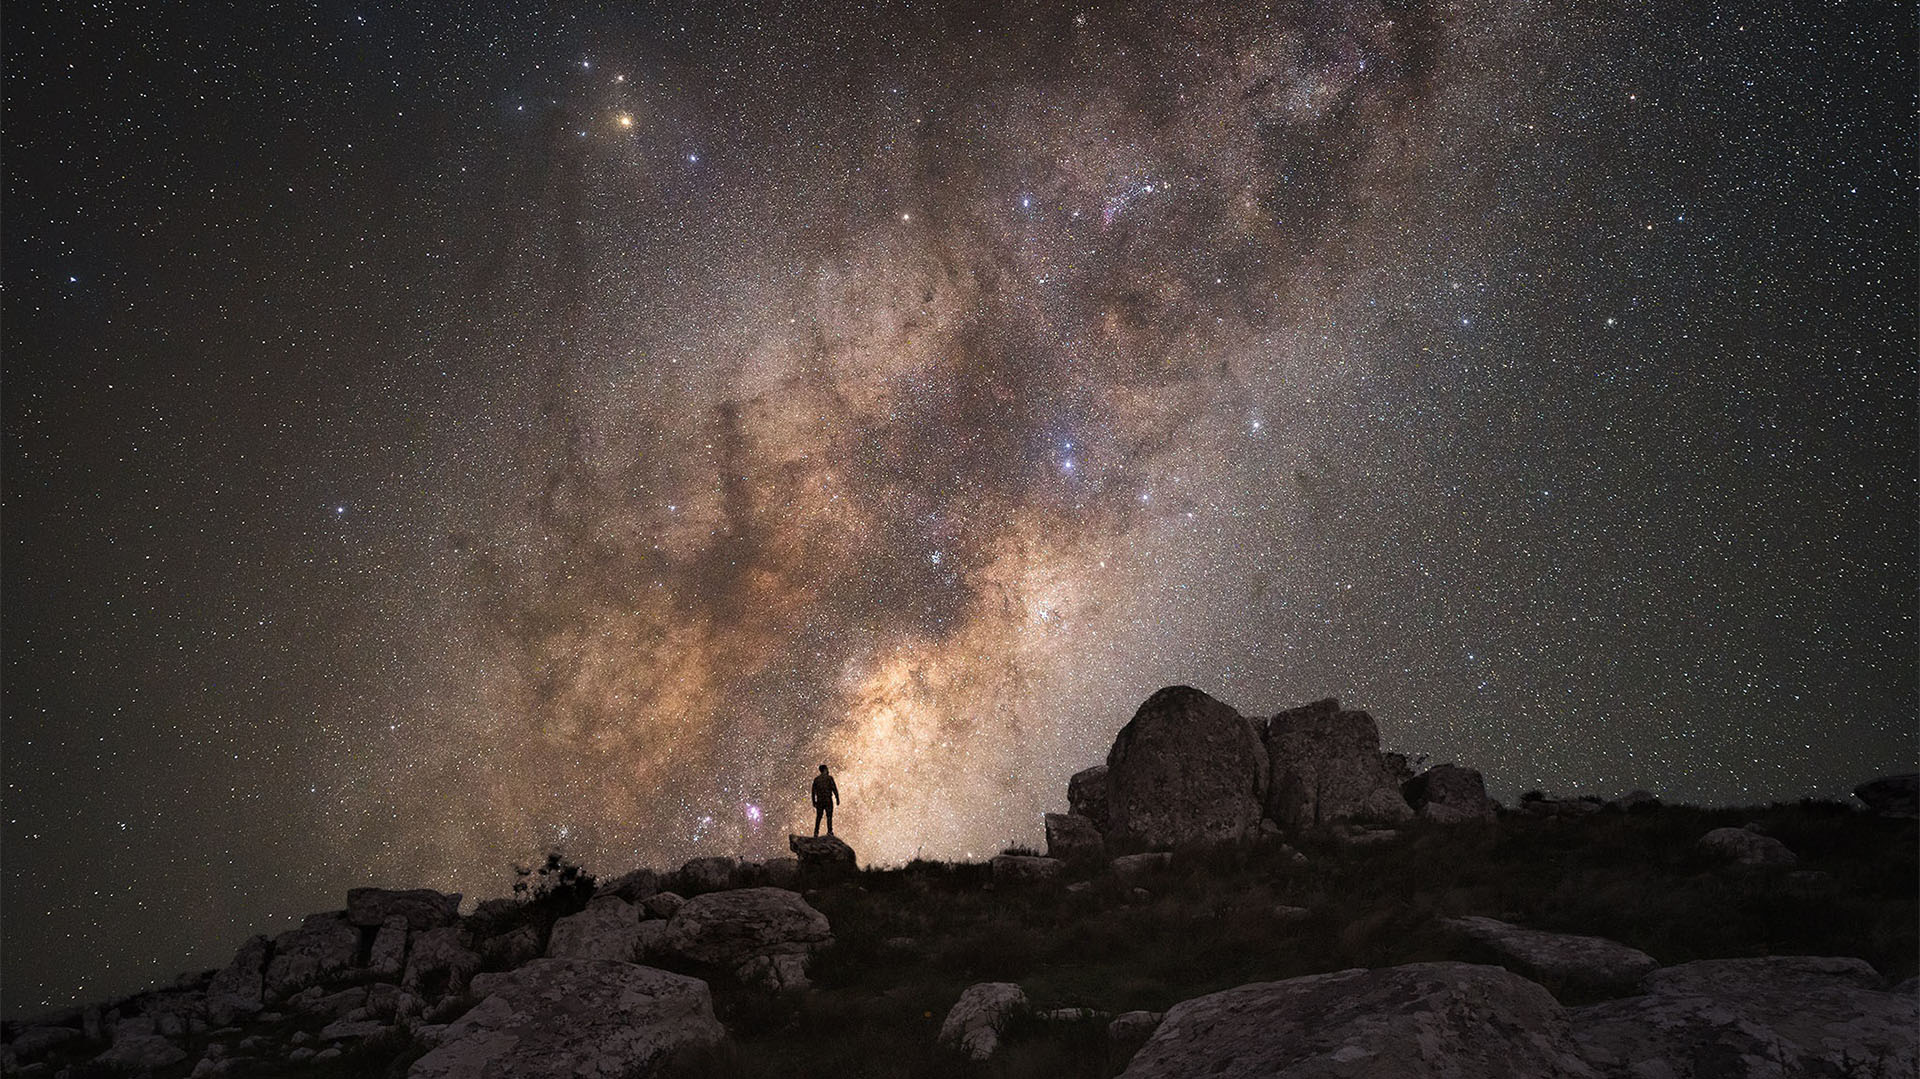 “La astrobiología es una ciencia joven o, si lo preferimos, una combinación de ciencias”, explica el experto (Fotografía tomada en Maldonado, Uruguay, por el astrofotógrafo uruguayo Fefo Bouvier)